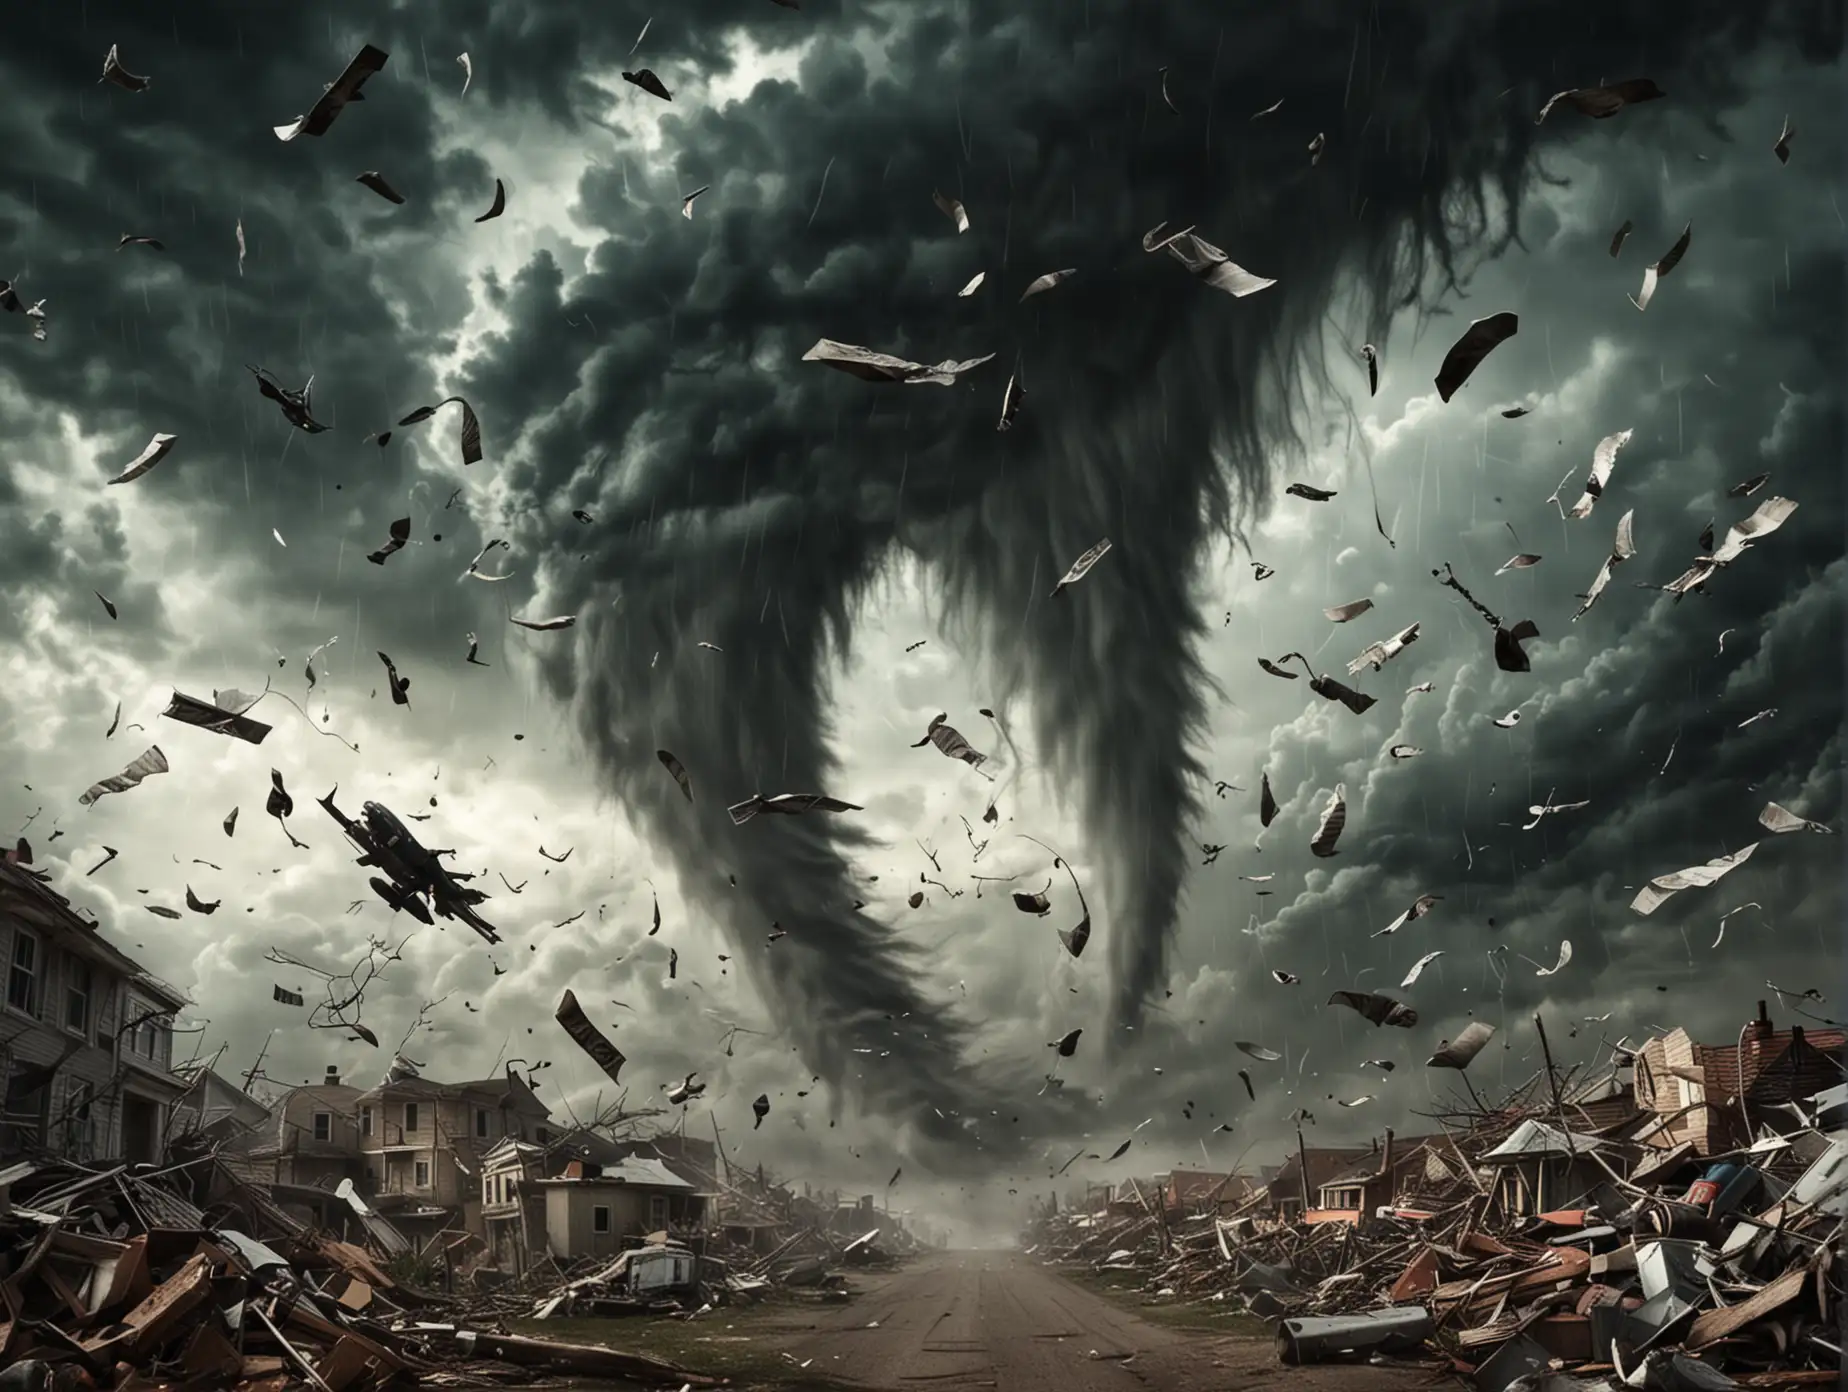 Dramatic Tornado Scene with Flying Debris